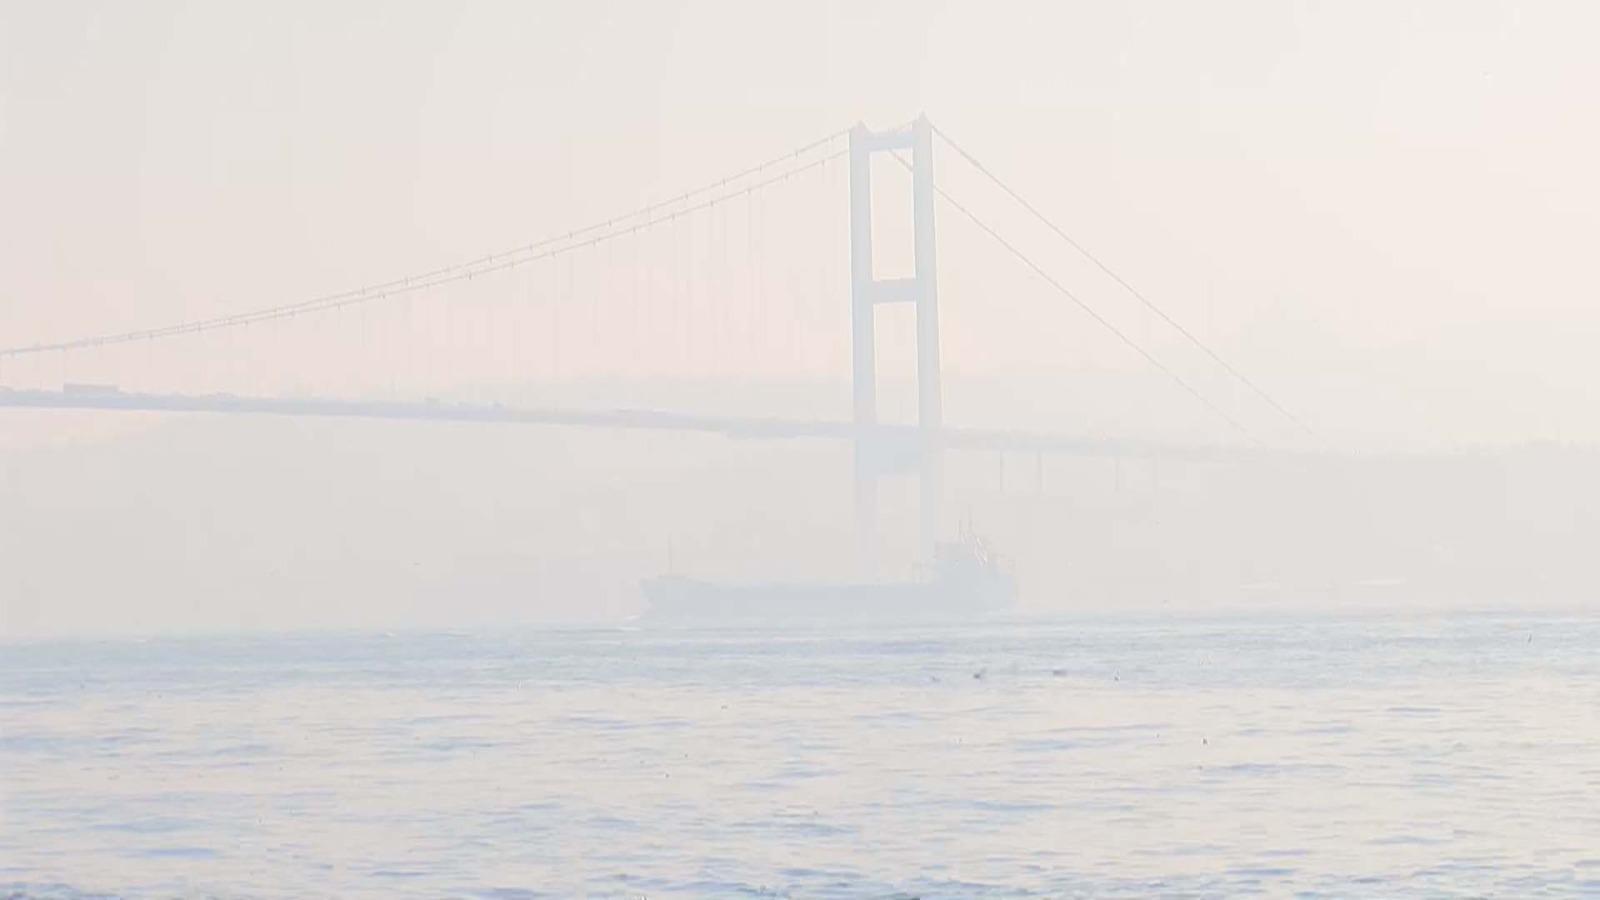 İstanbulda hava kirliliği hassas seviyeye ulaştı